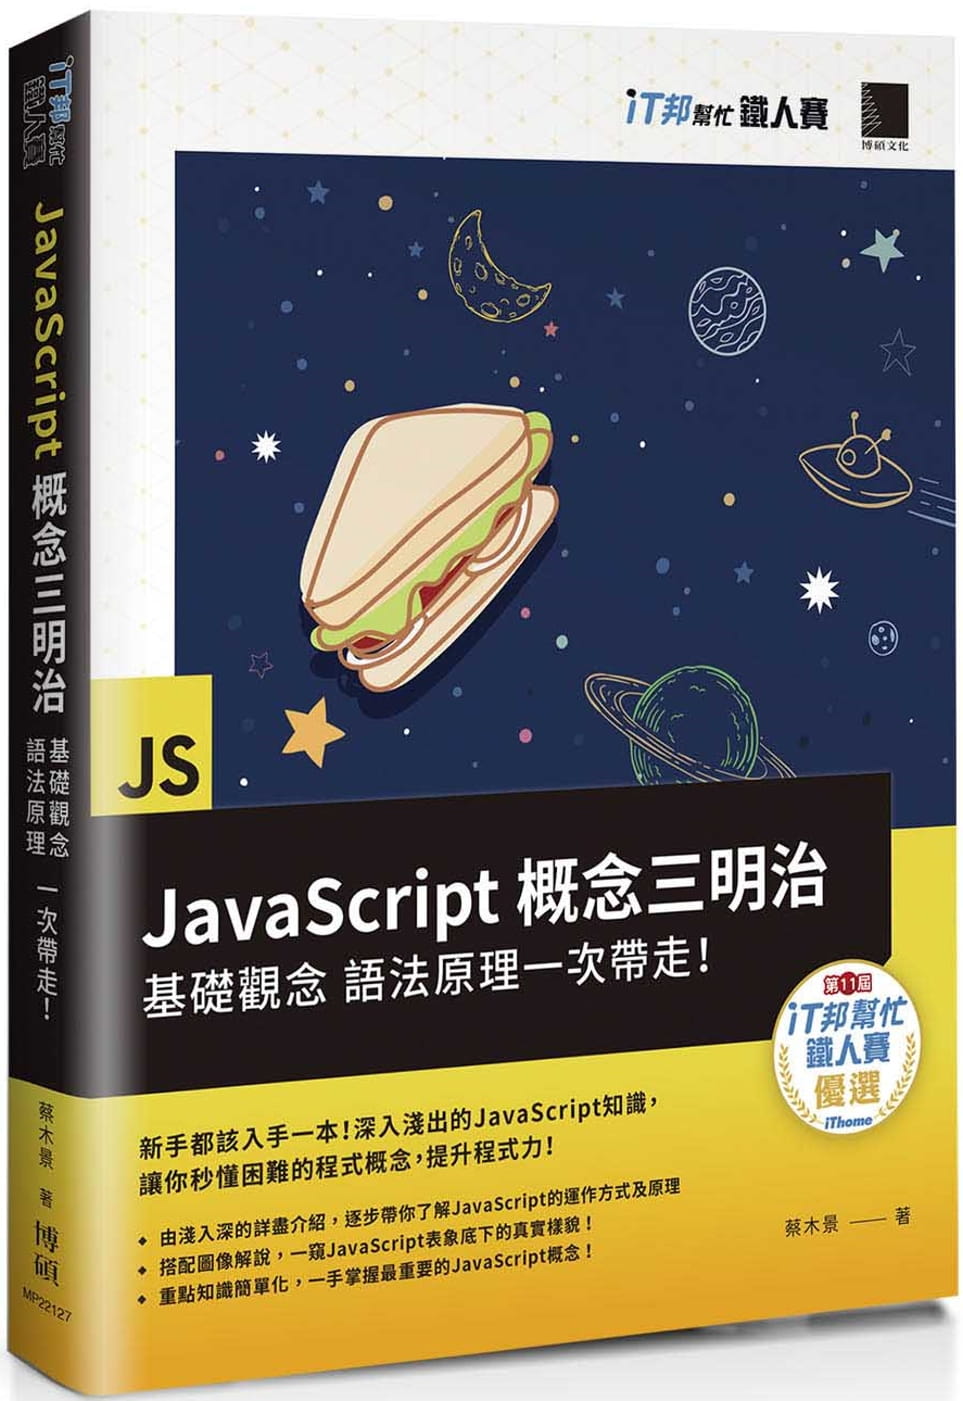 JavaScript概念三明治：基礎觀念、語法原理一次帶走！